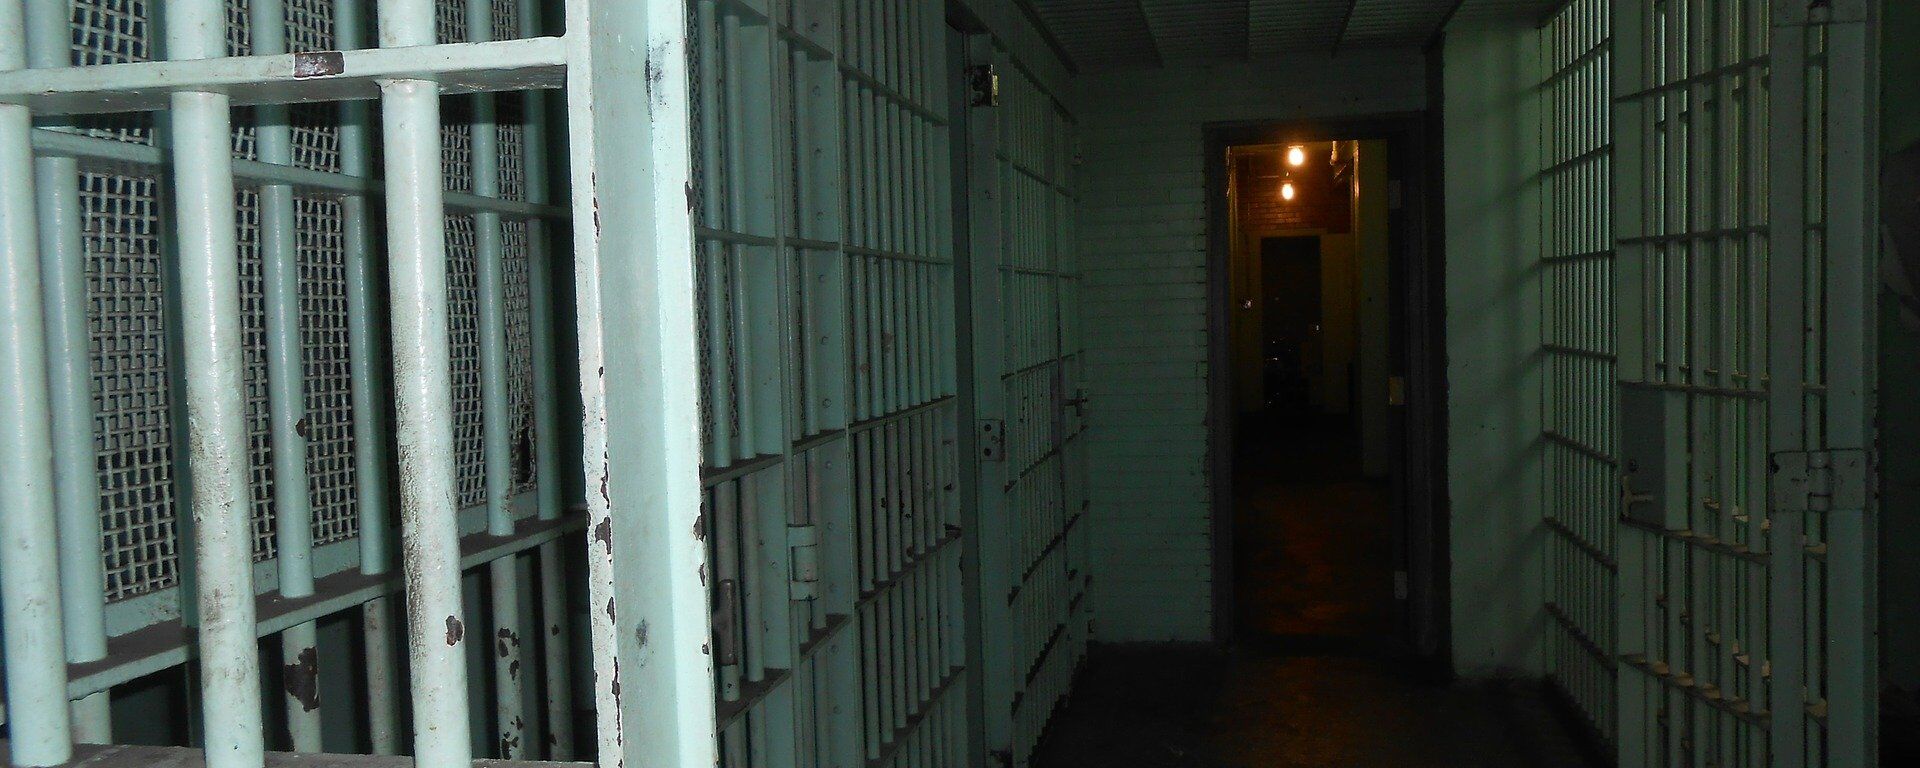 El pasillo de una cárcel (imagen referencial) - Sputnik Mundo, 1920, 01.10.2021